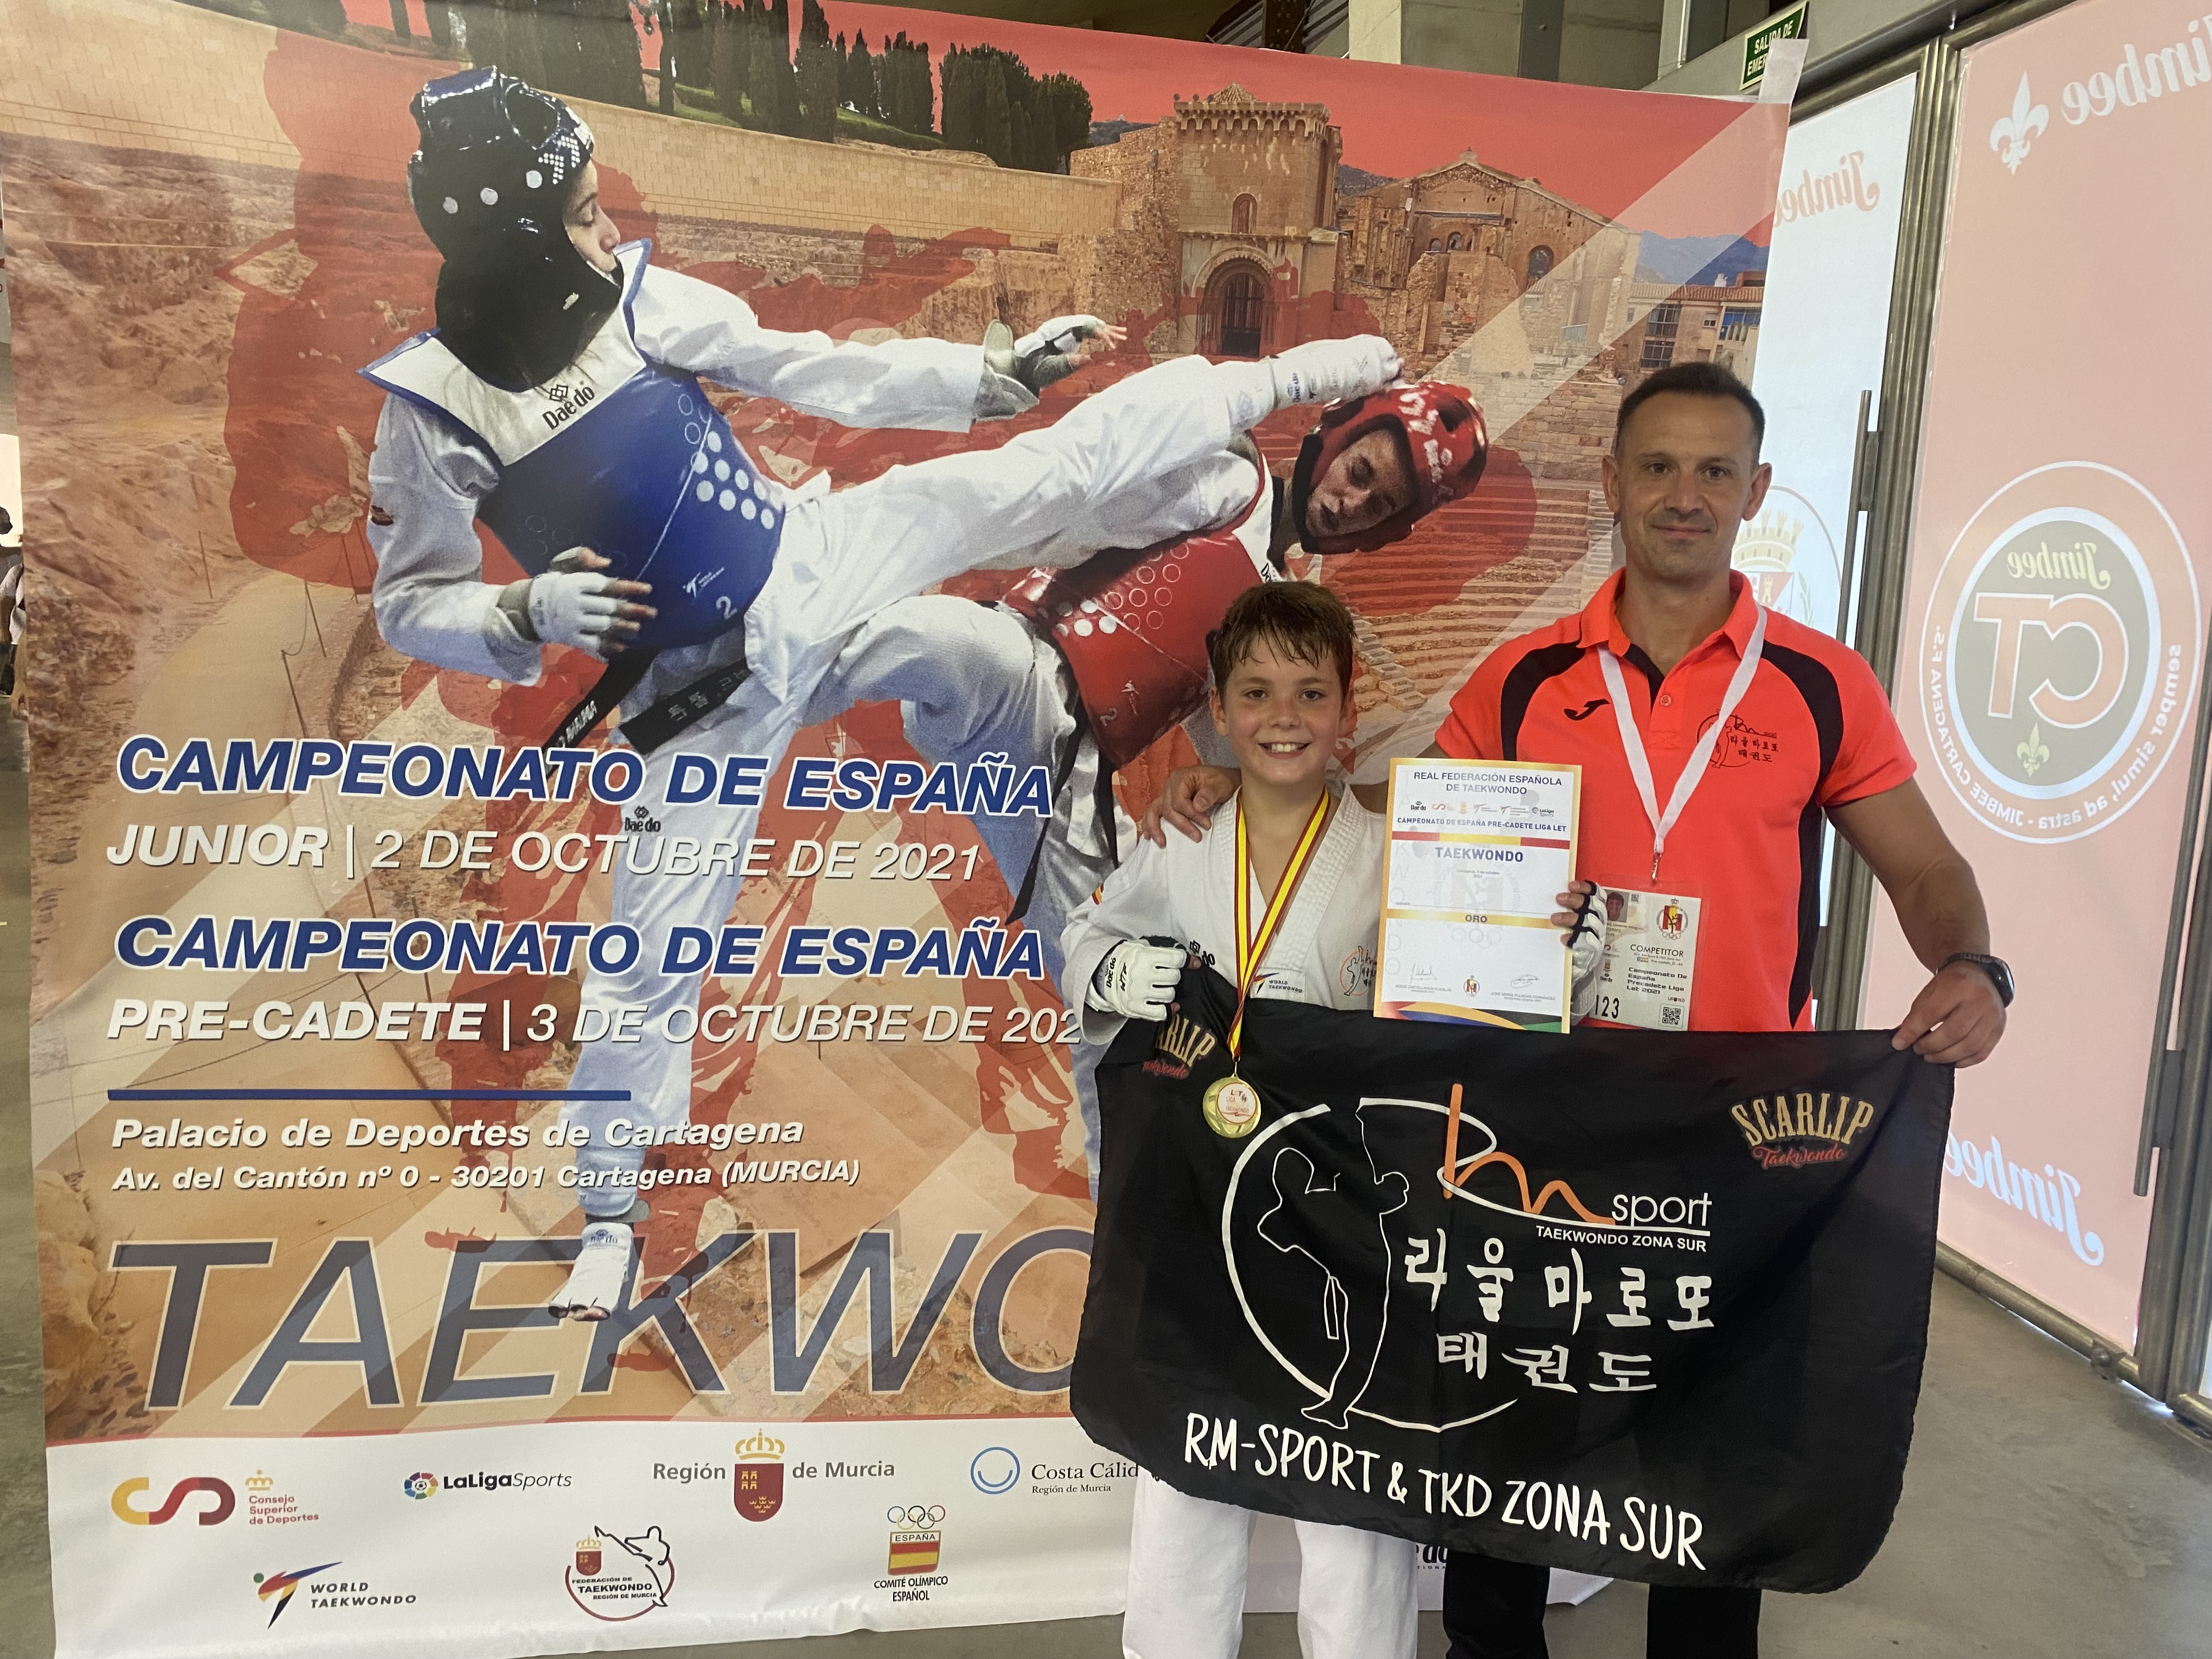 C.D. Taekwondo RM-Sport: Crónica del Fin de semana